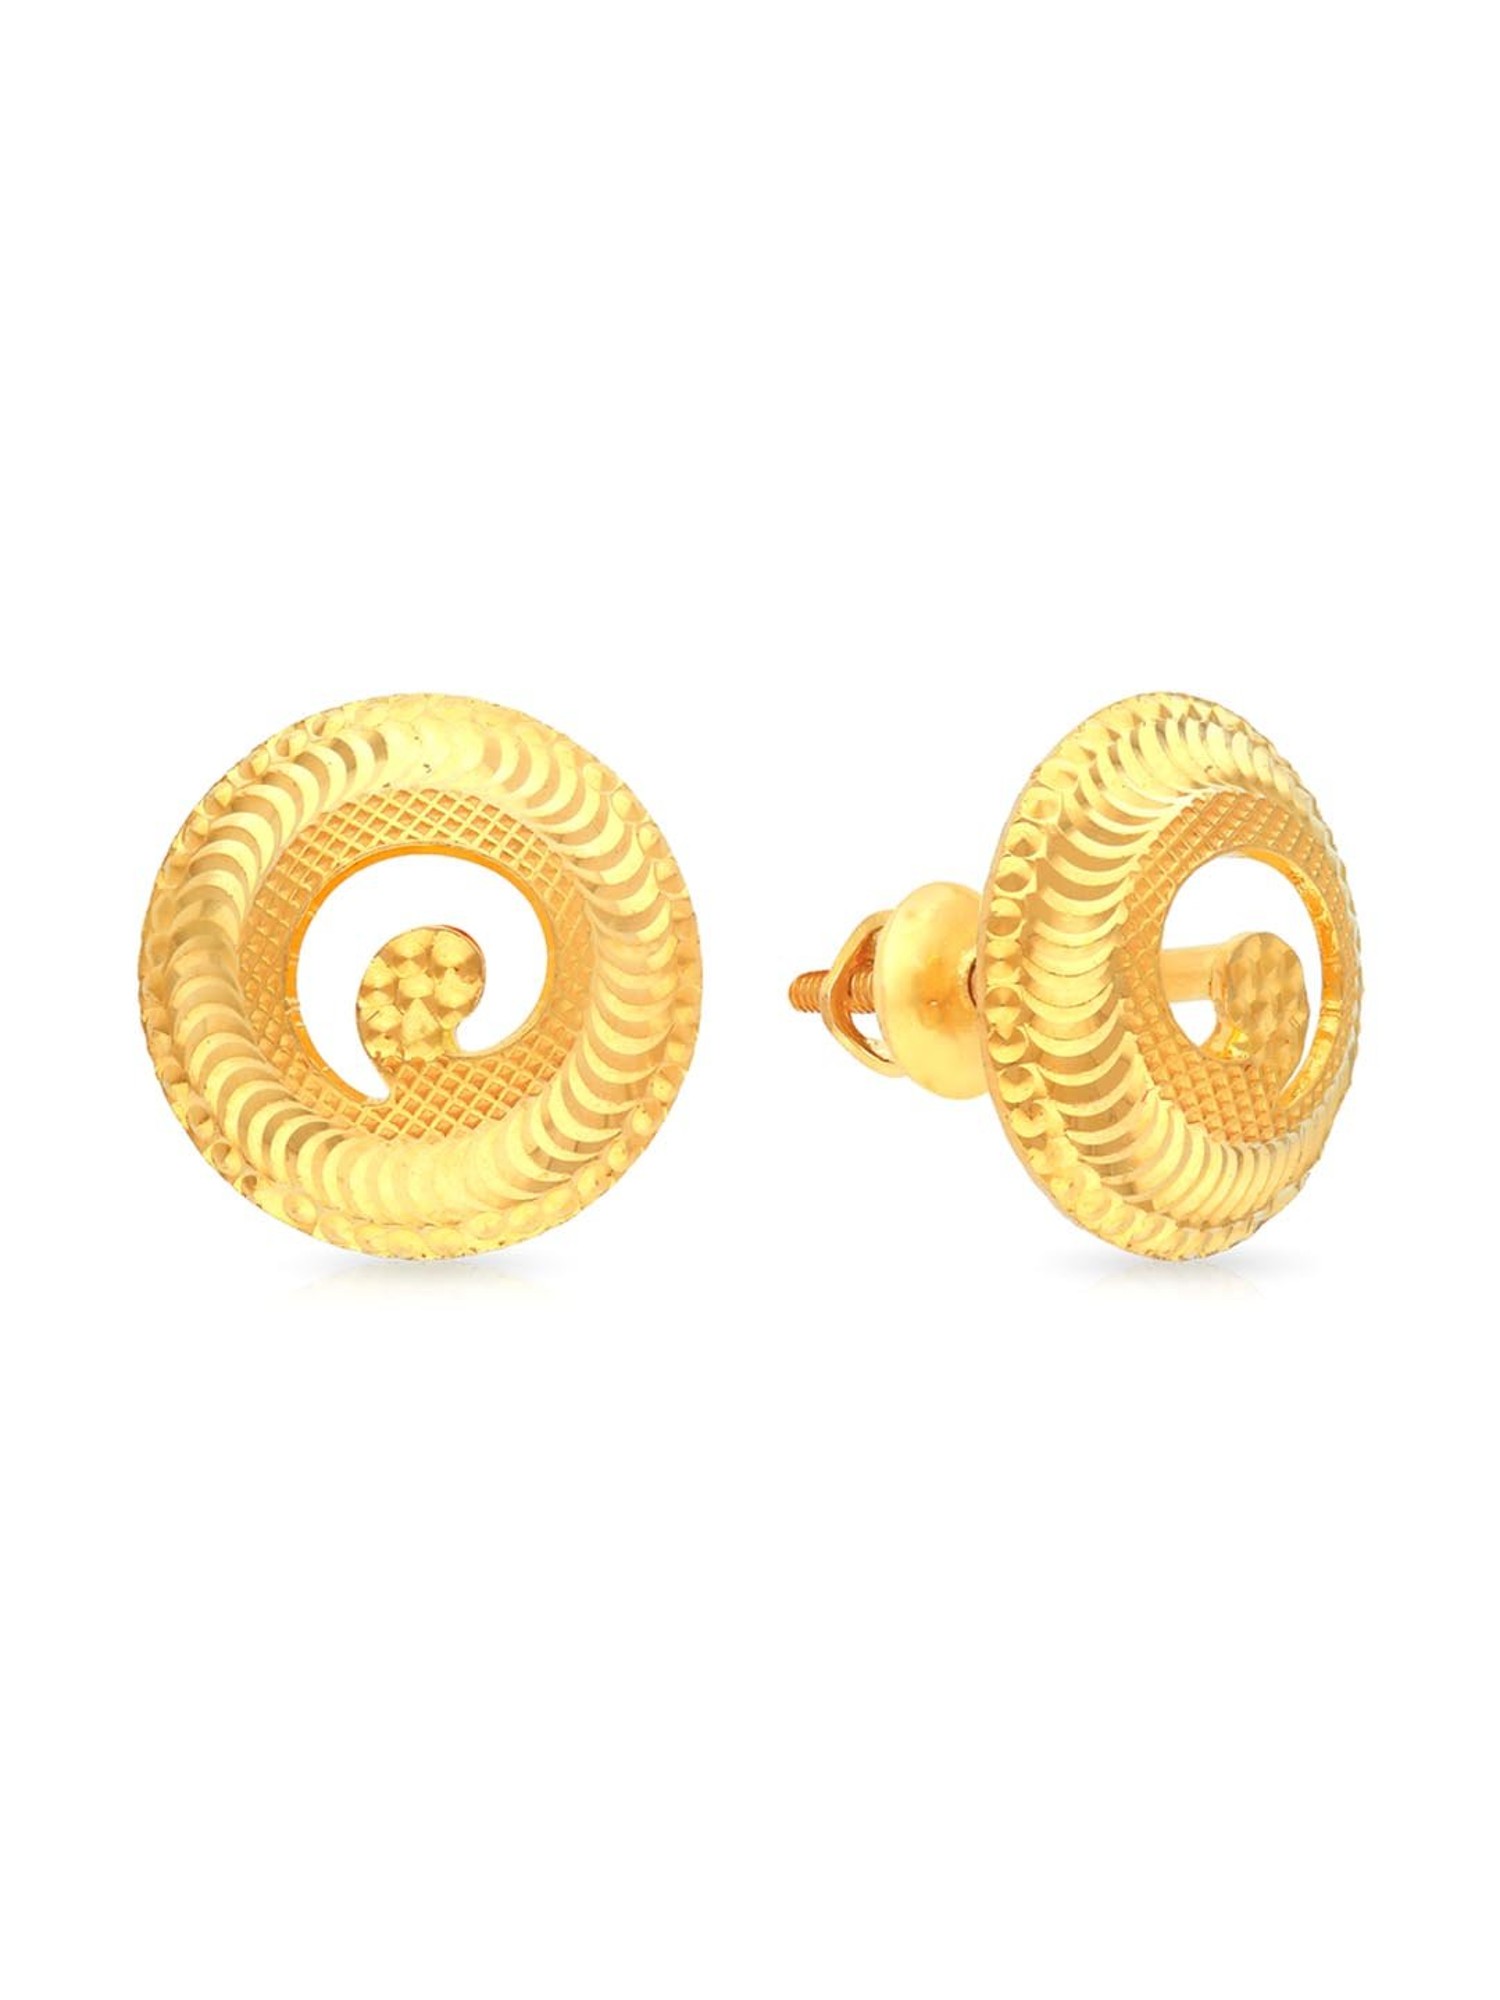 Latest Light Weight Gold Ear Studs Designs with stones | gold earrings  designs - YouTube | Gold earrings designs, Designer earrings, Gold jewelry  fashion